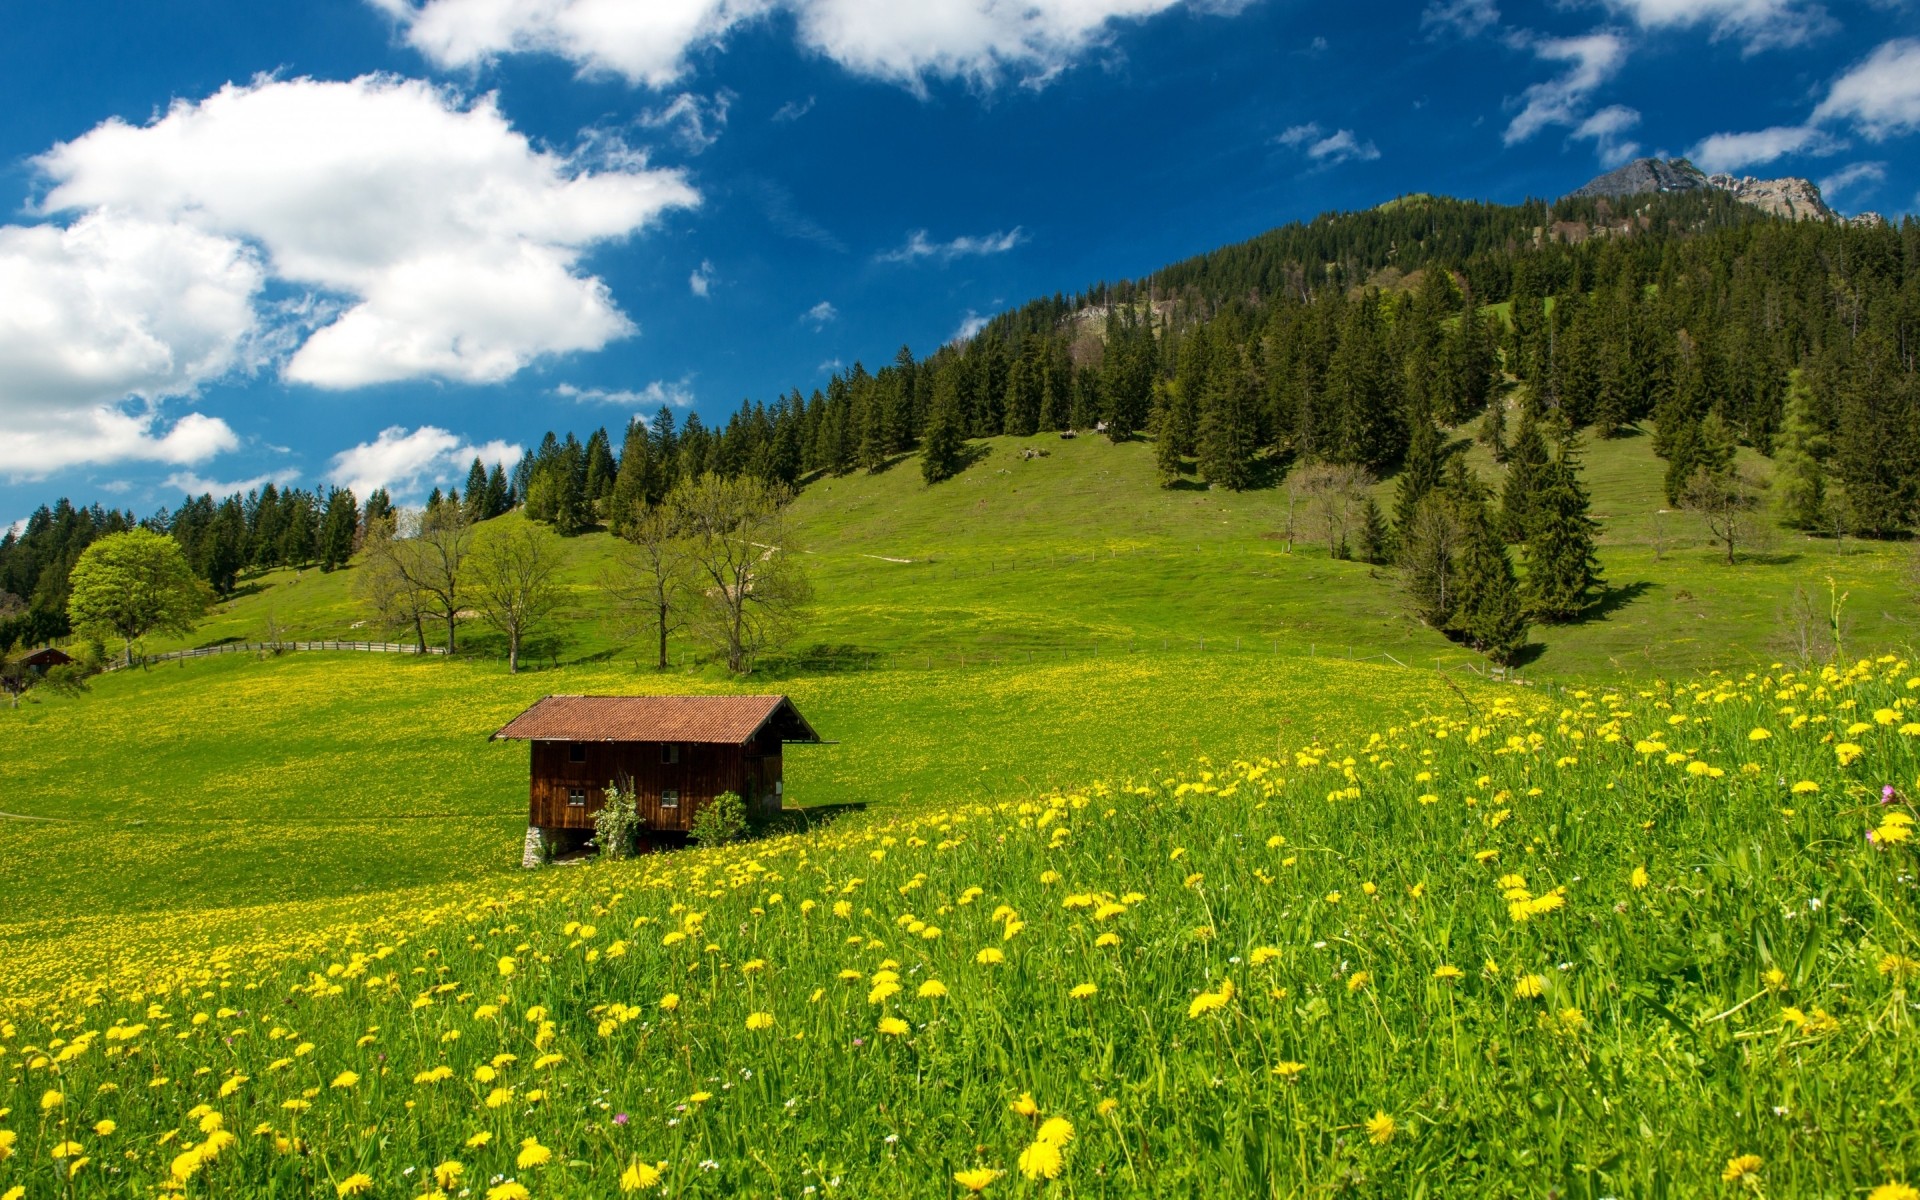 германия пейзаж сенокос природа горы трава лето древесины живописный поле на открытом воздухе сельских небо дерево пастбища страна зрелище пастбище идиллия путешествия горы холмы